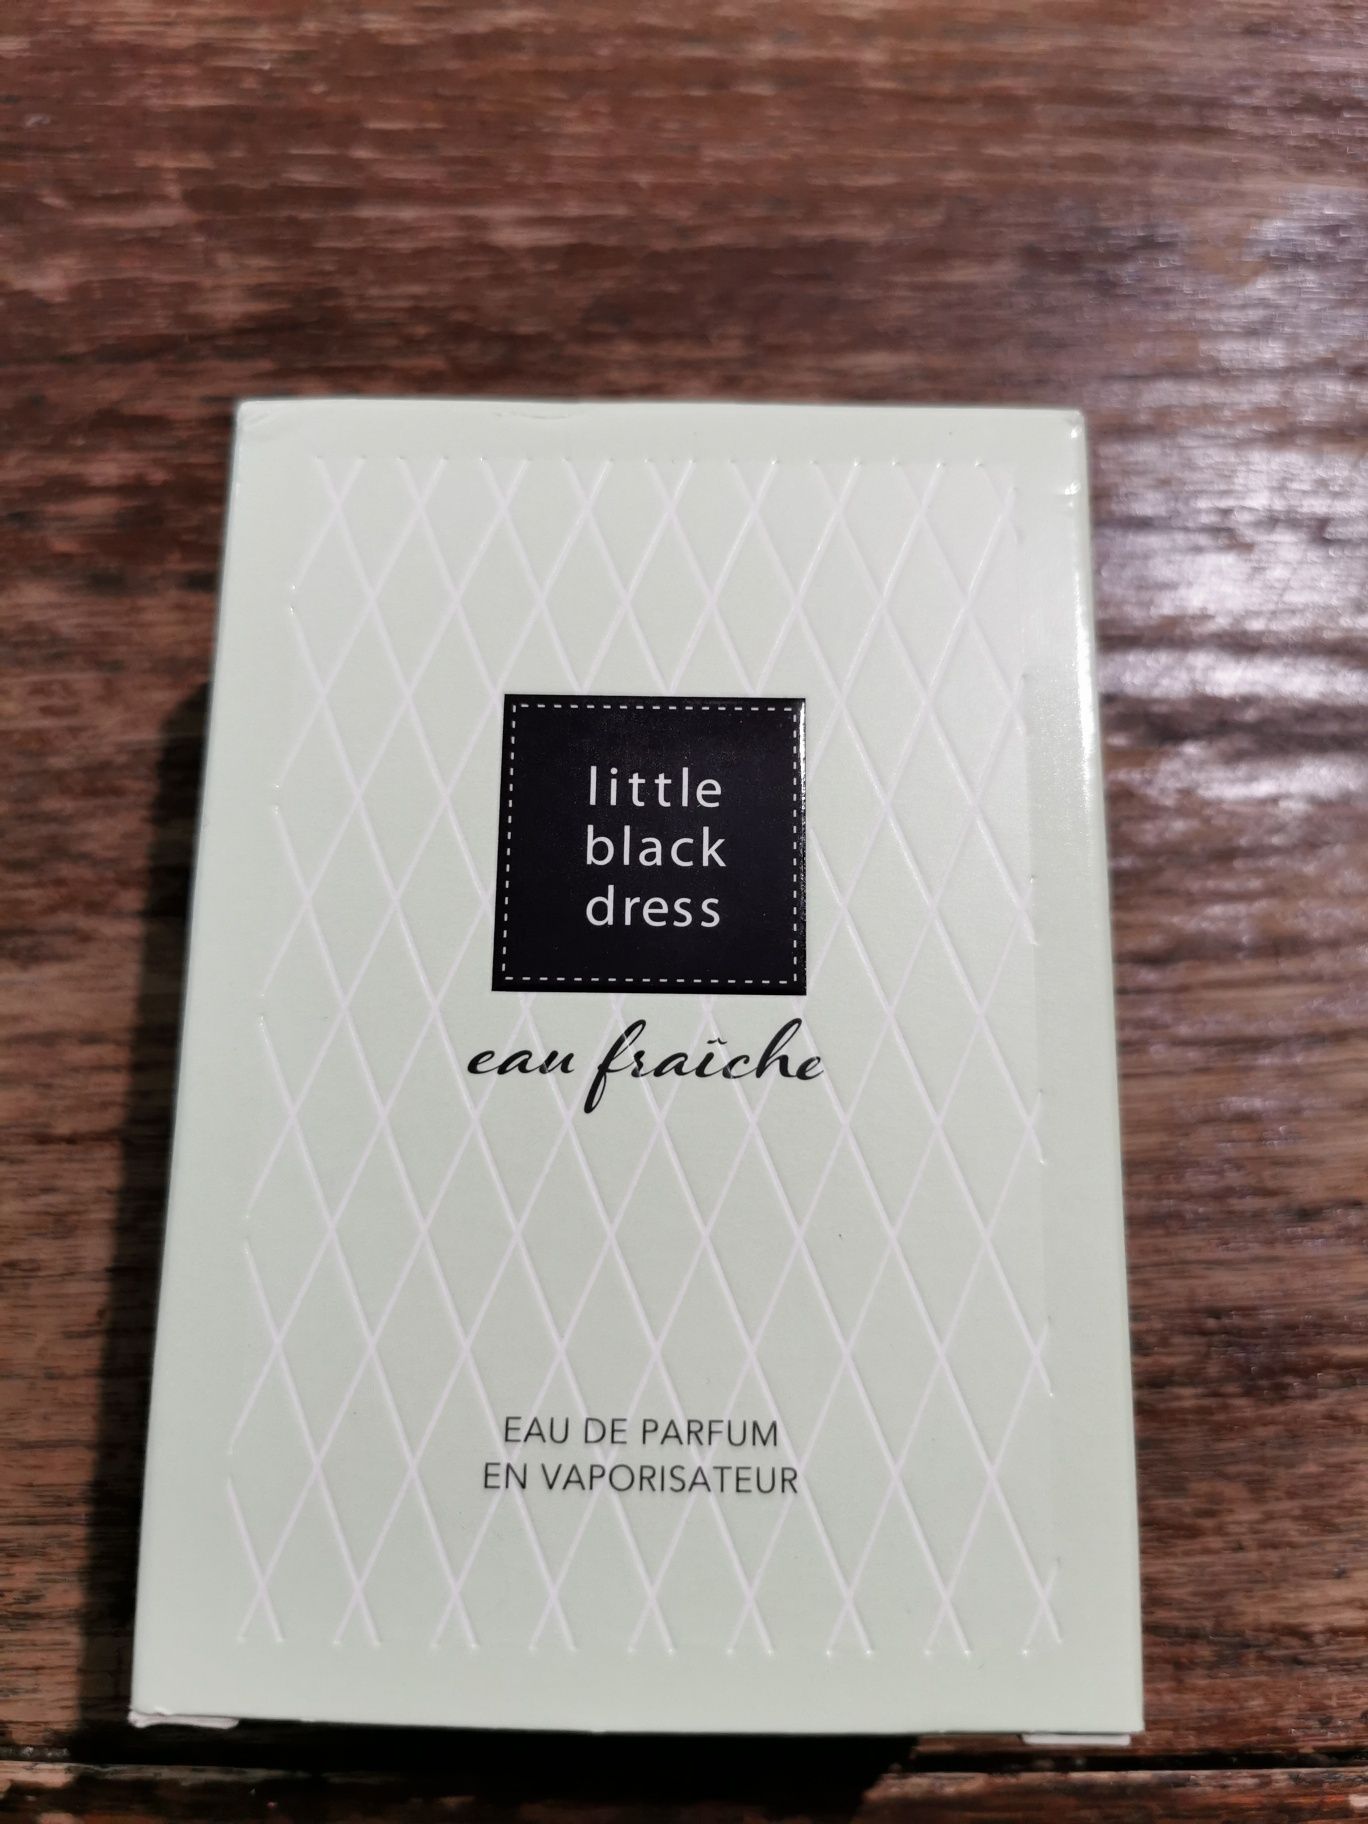 Little black dress eau fraiche